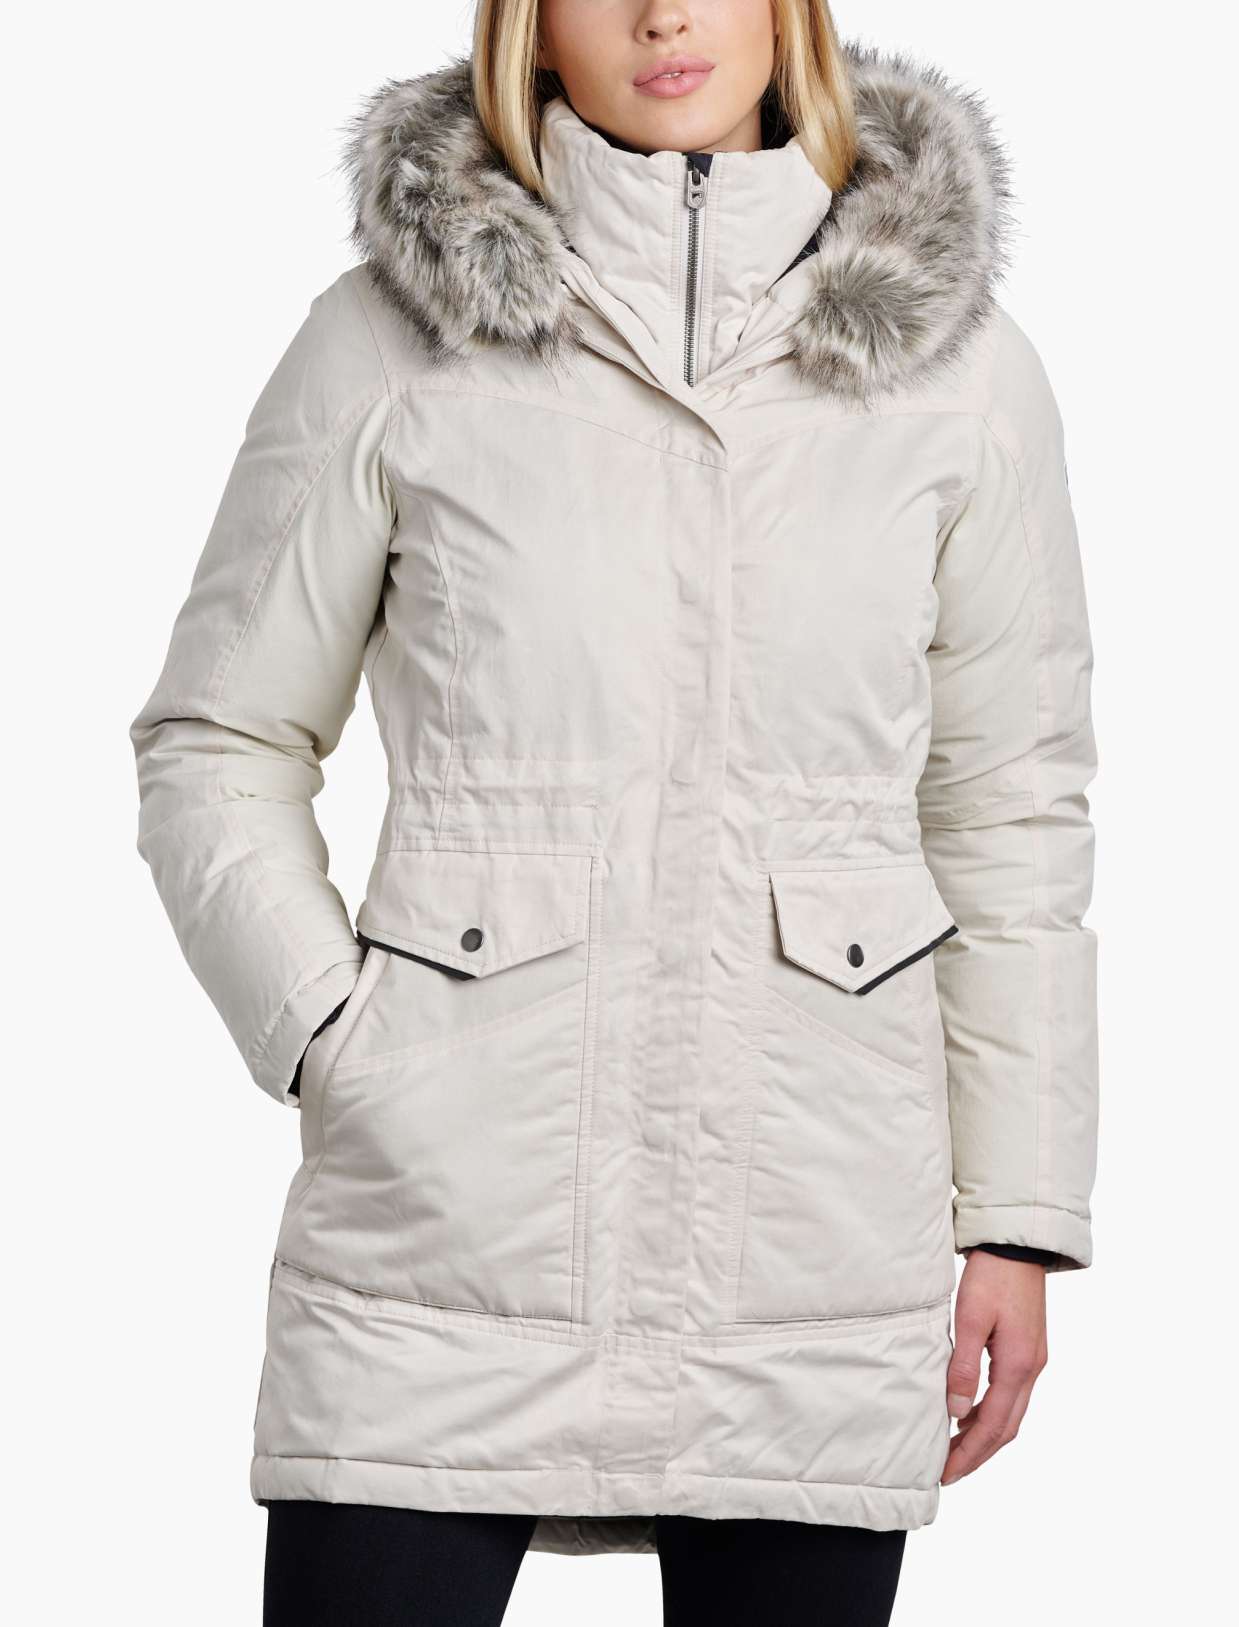 Vermont Gear - Farm-Way: Kuhl Men's Arktik™ Jacket